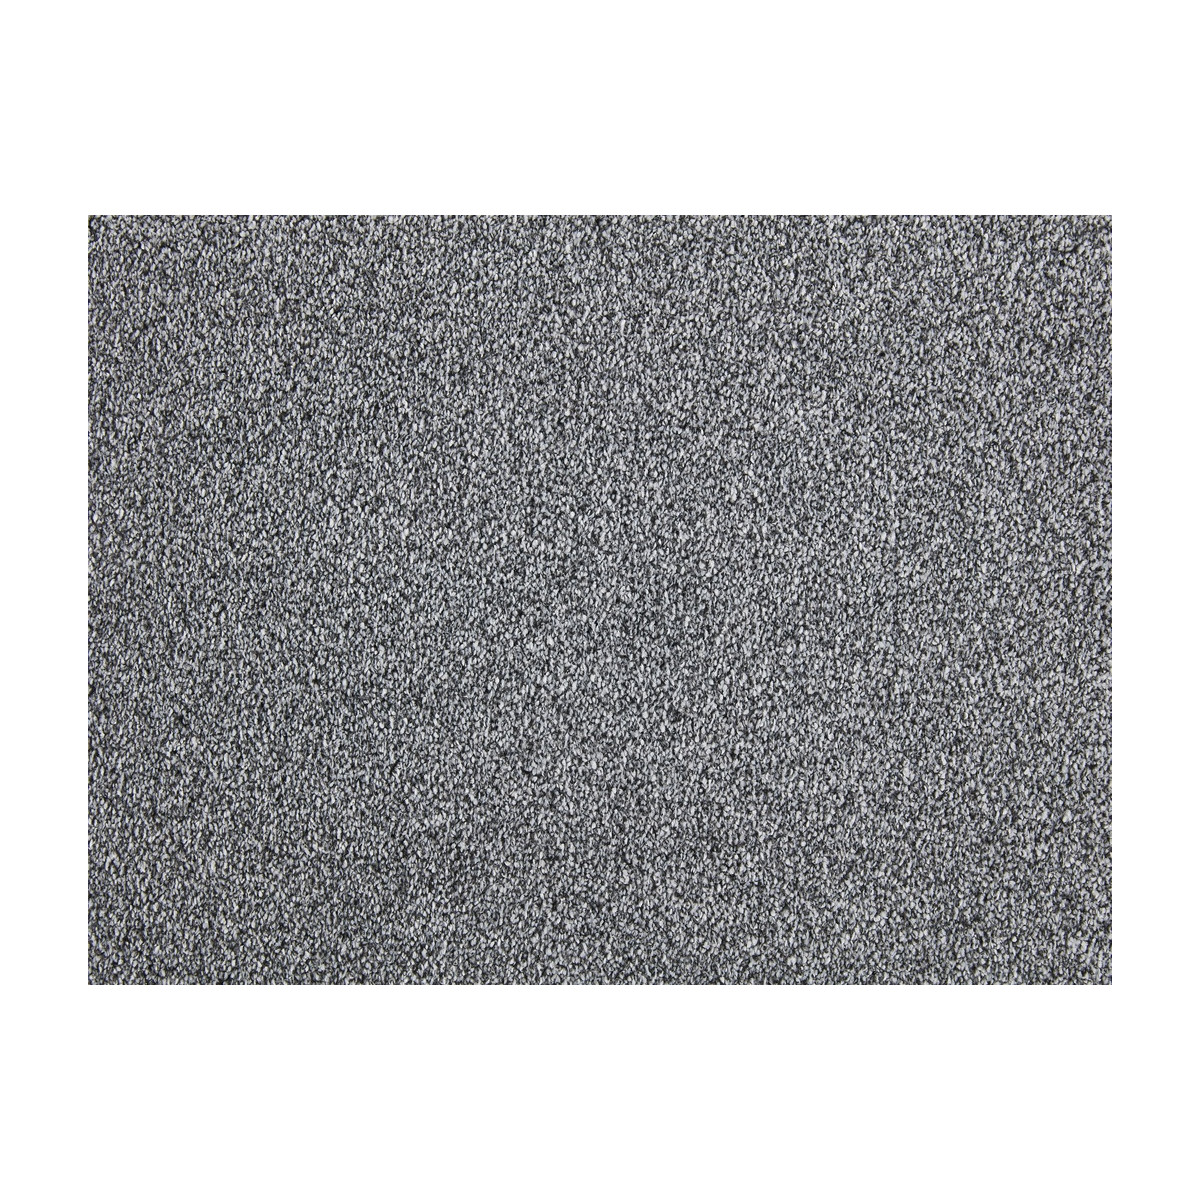 Metrážny koberec Charisma 843